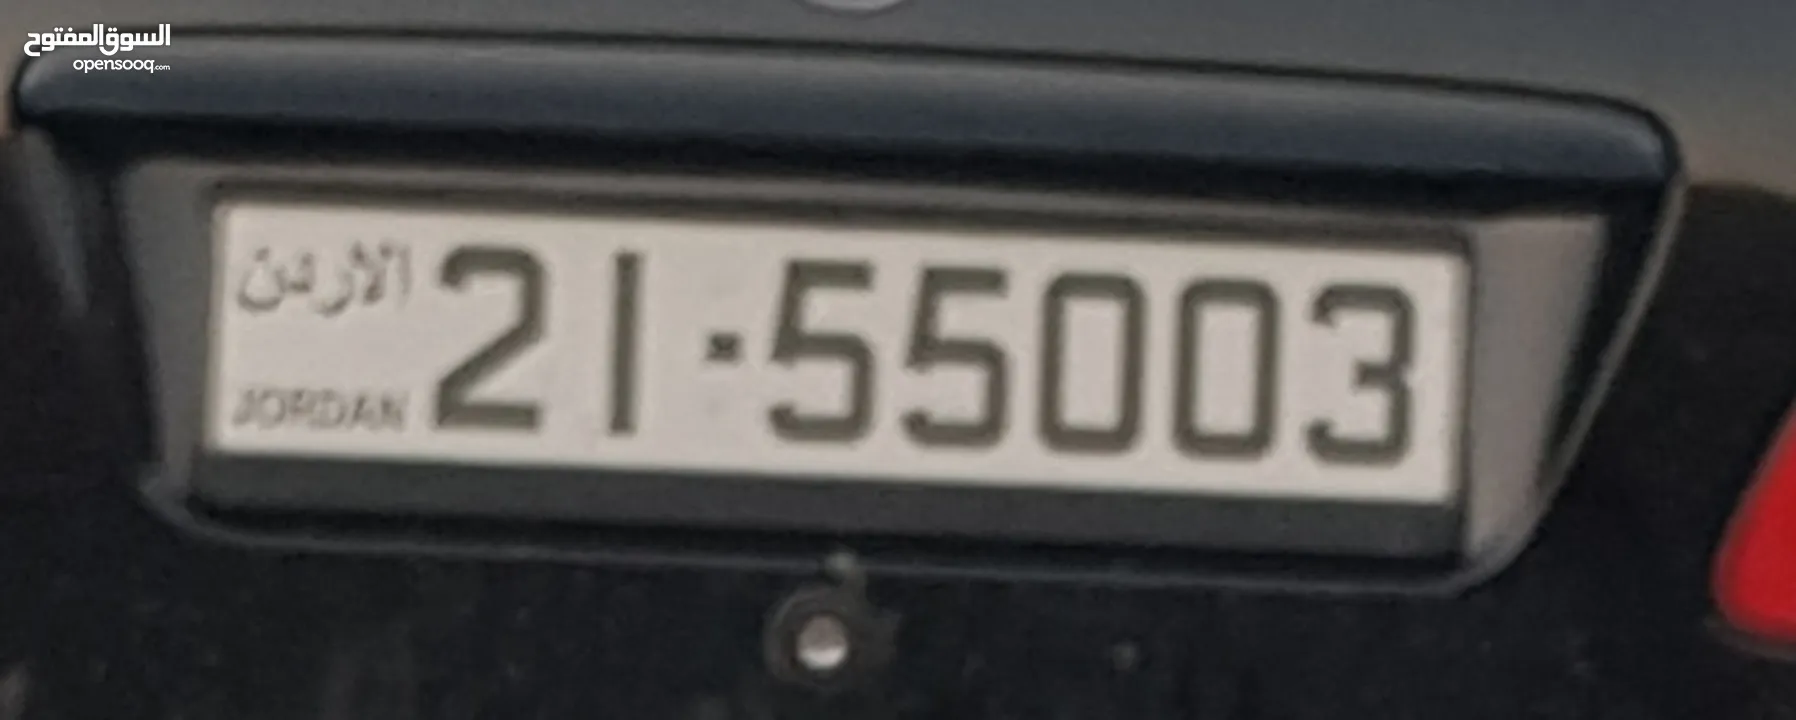 رقم سيارة مميز للبيع